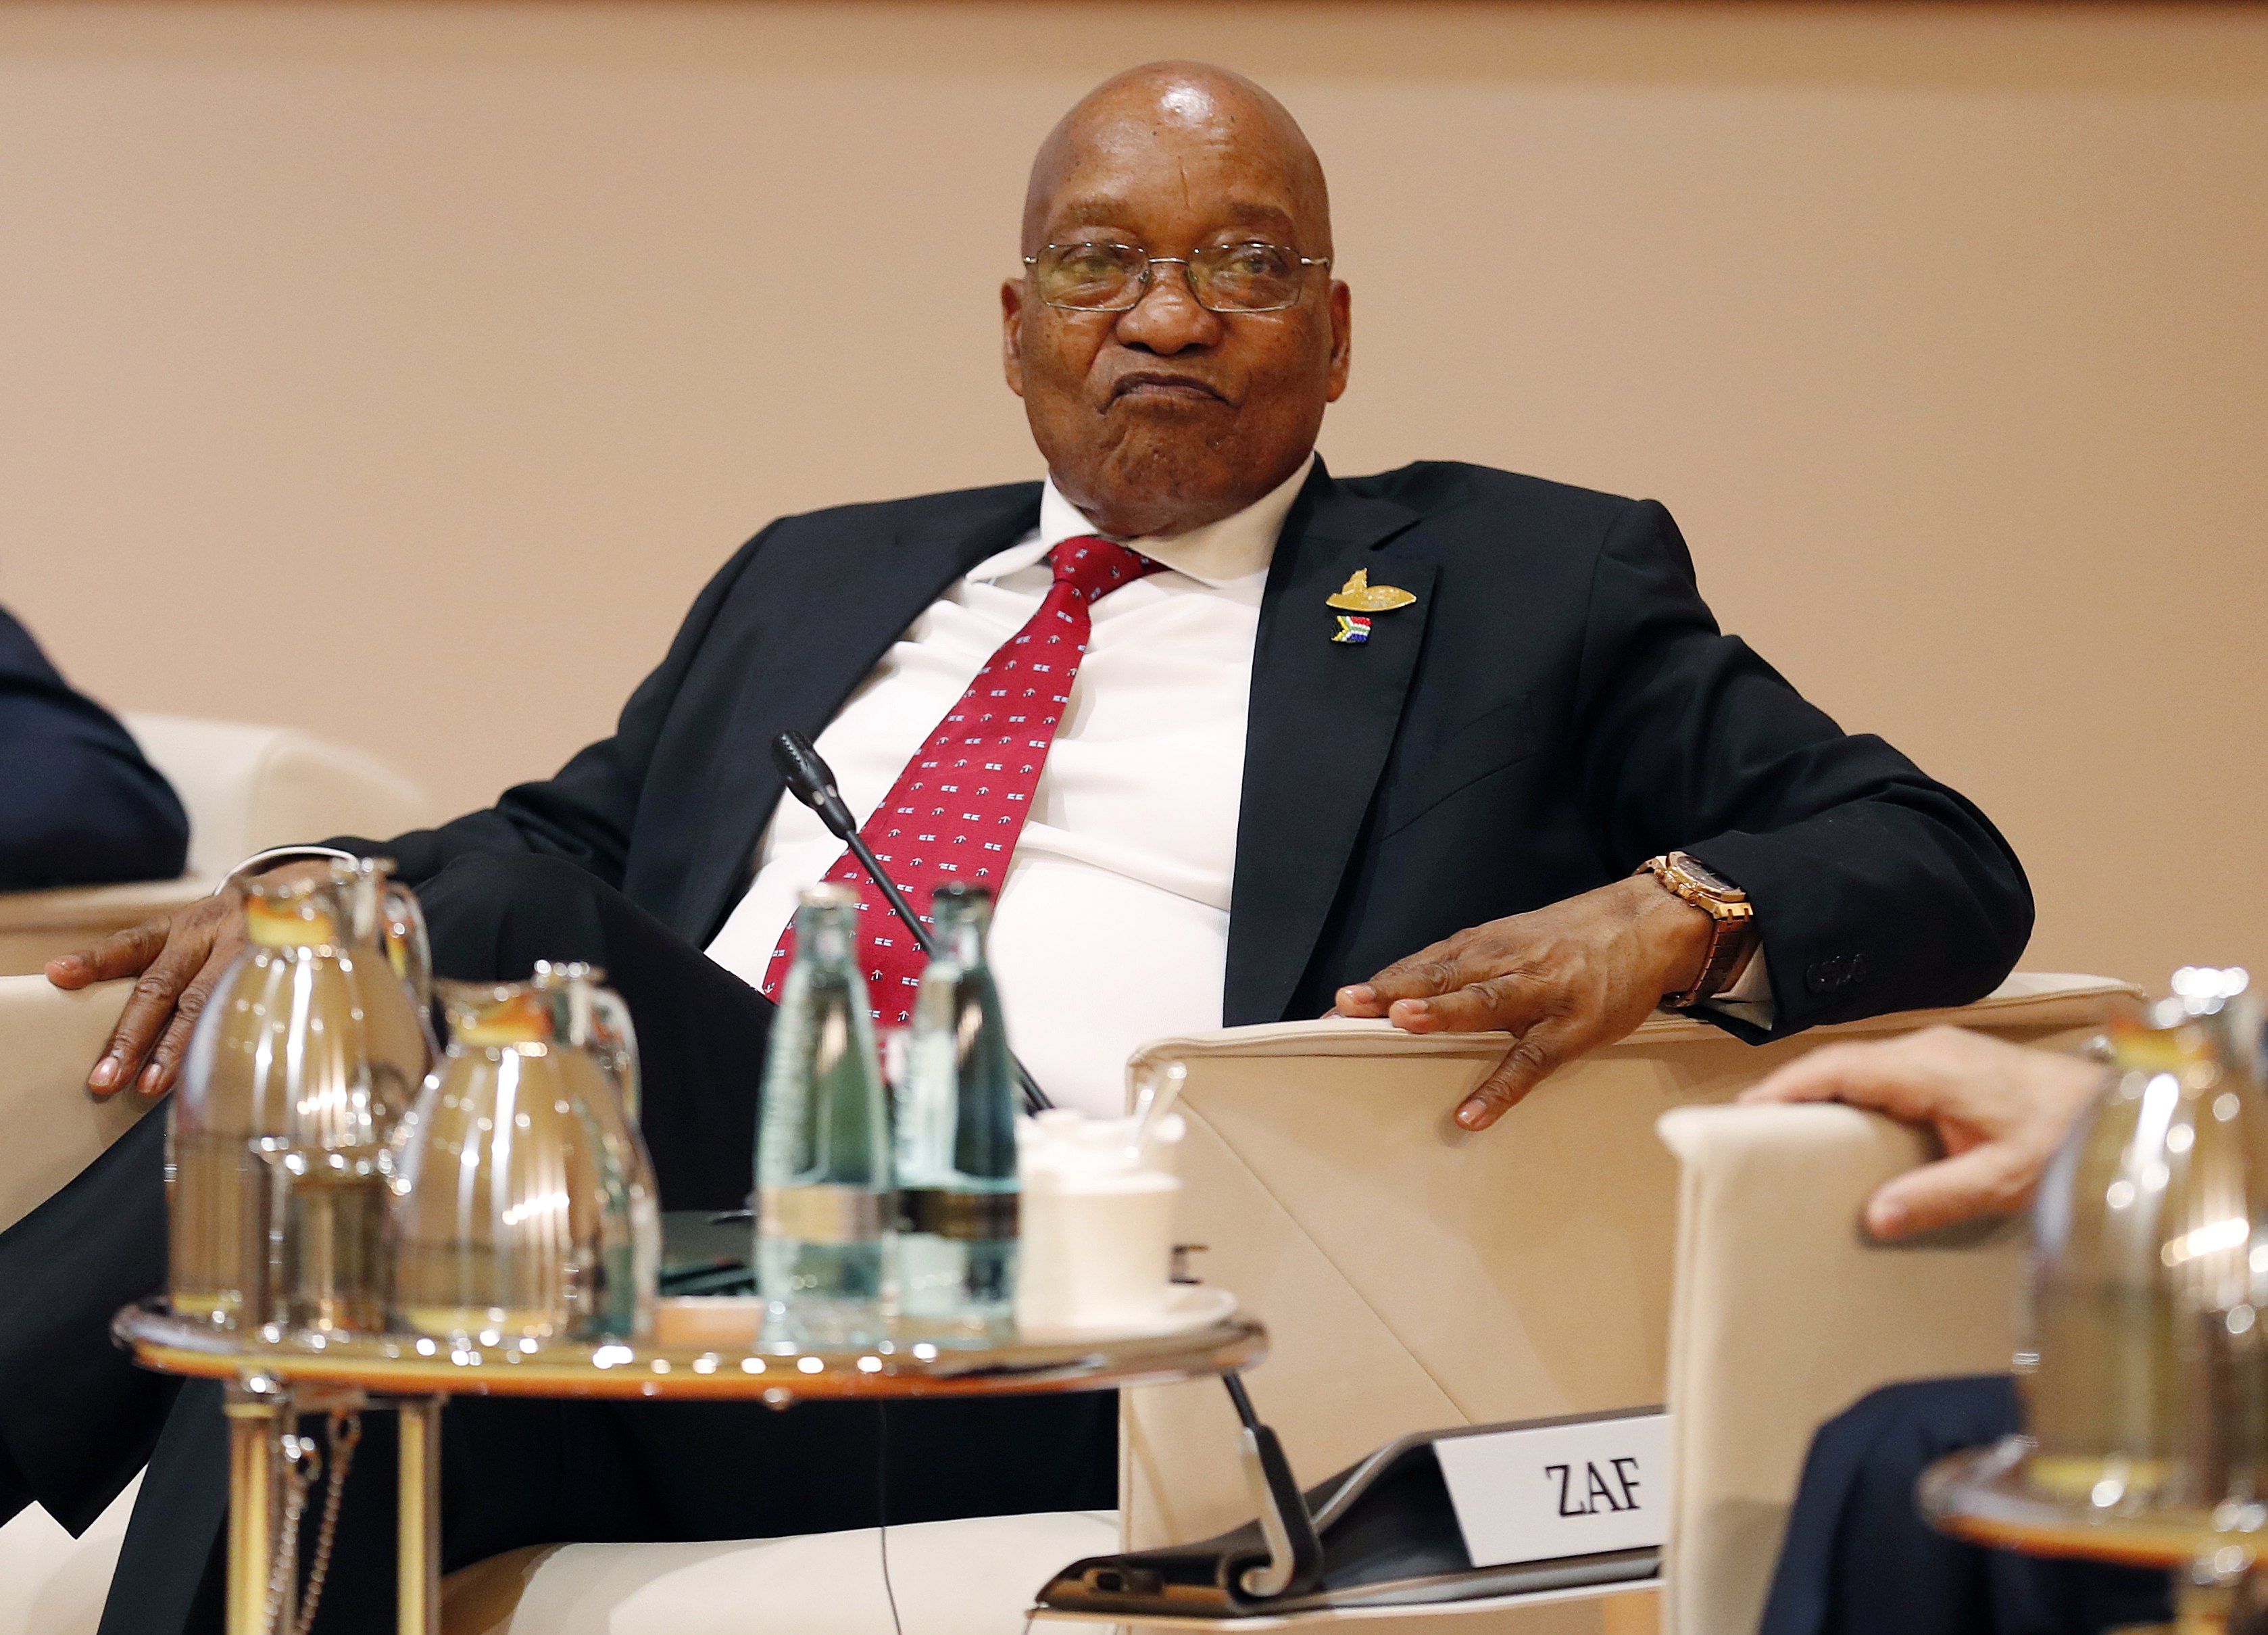 A dél-afrikai elnök, Jacob Zuma a hamburgi G20-csúcson, 2017 július 7-én. A dél-afrikai legfelsőbb bíróság 2017. október 13-án úgy döntött, az elnök vád alá helyzhető mintegy 800 korrupciós ügyben. A vádak egy 1990-es fegyverüzlethez köthetőek. EPA/FRIEDEMANN VOGEL/POOL